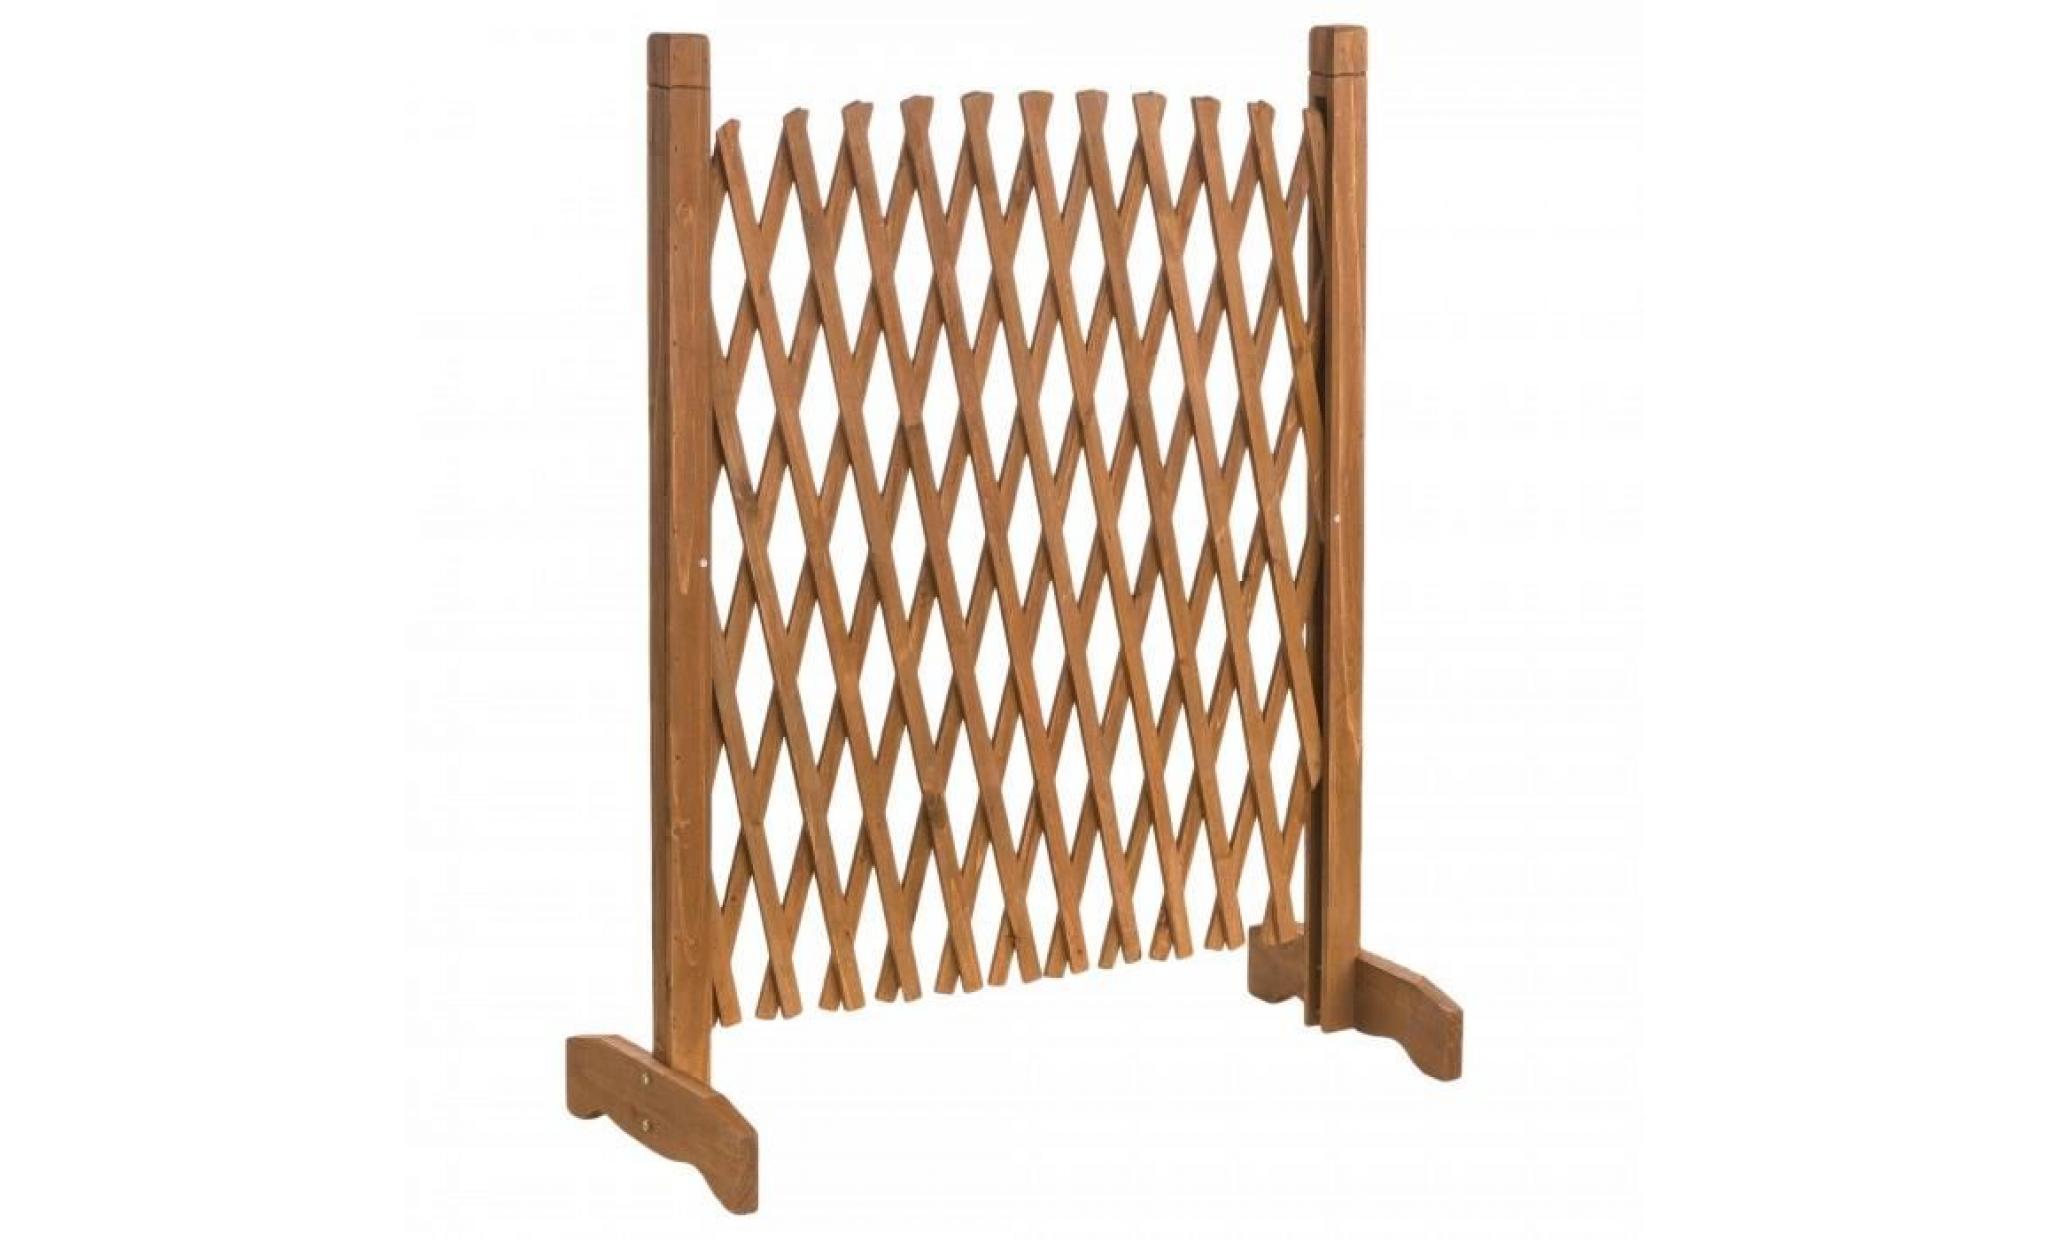 barriere extensible en bois. matiere : bois brut. simple a positionne. larges pieds. dimensions : 150 x 90 x 30 cm.